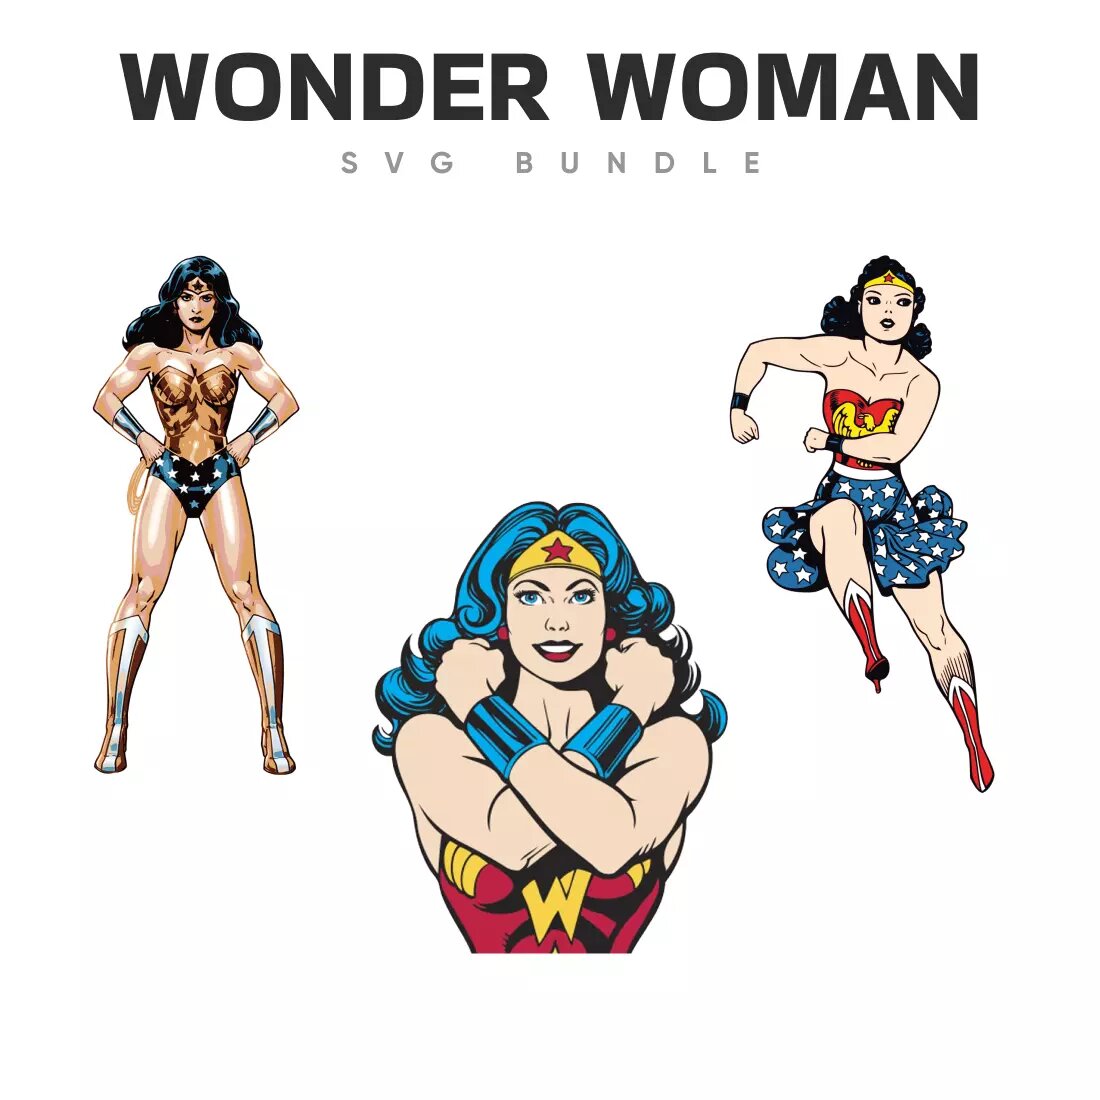 Wonder Woman SVG Bundle Preview 3.